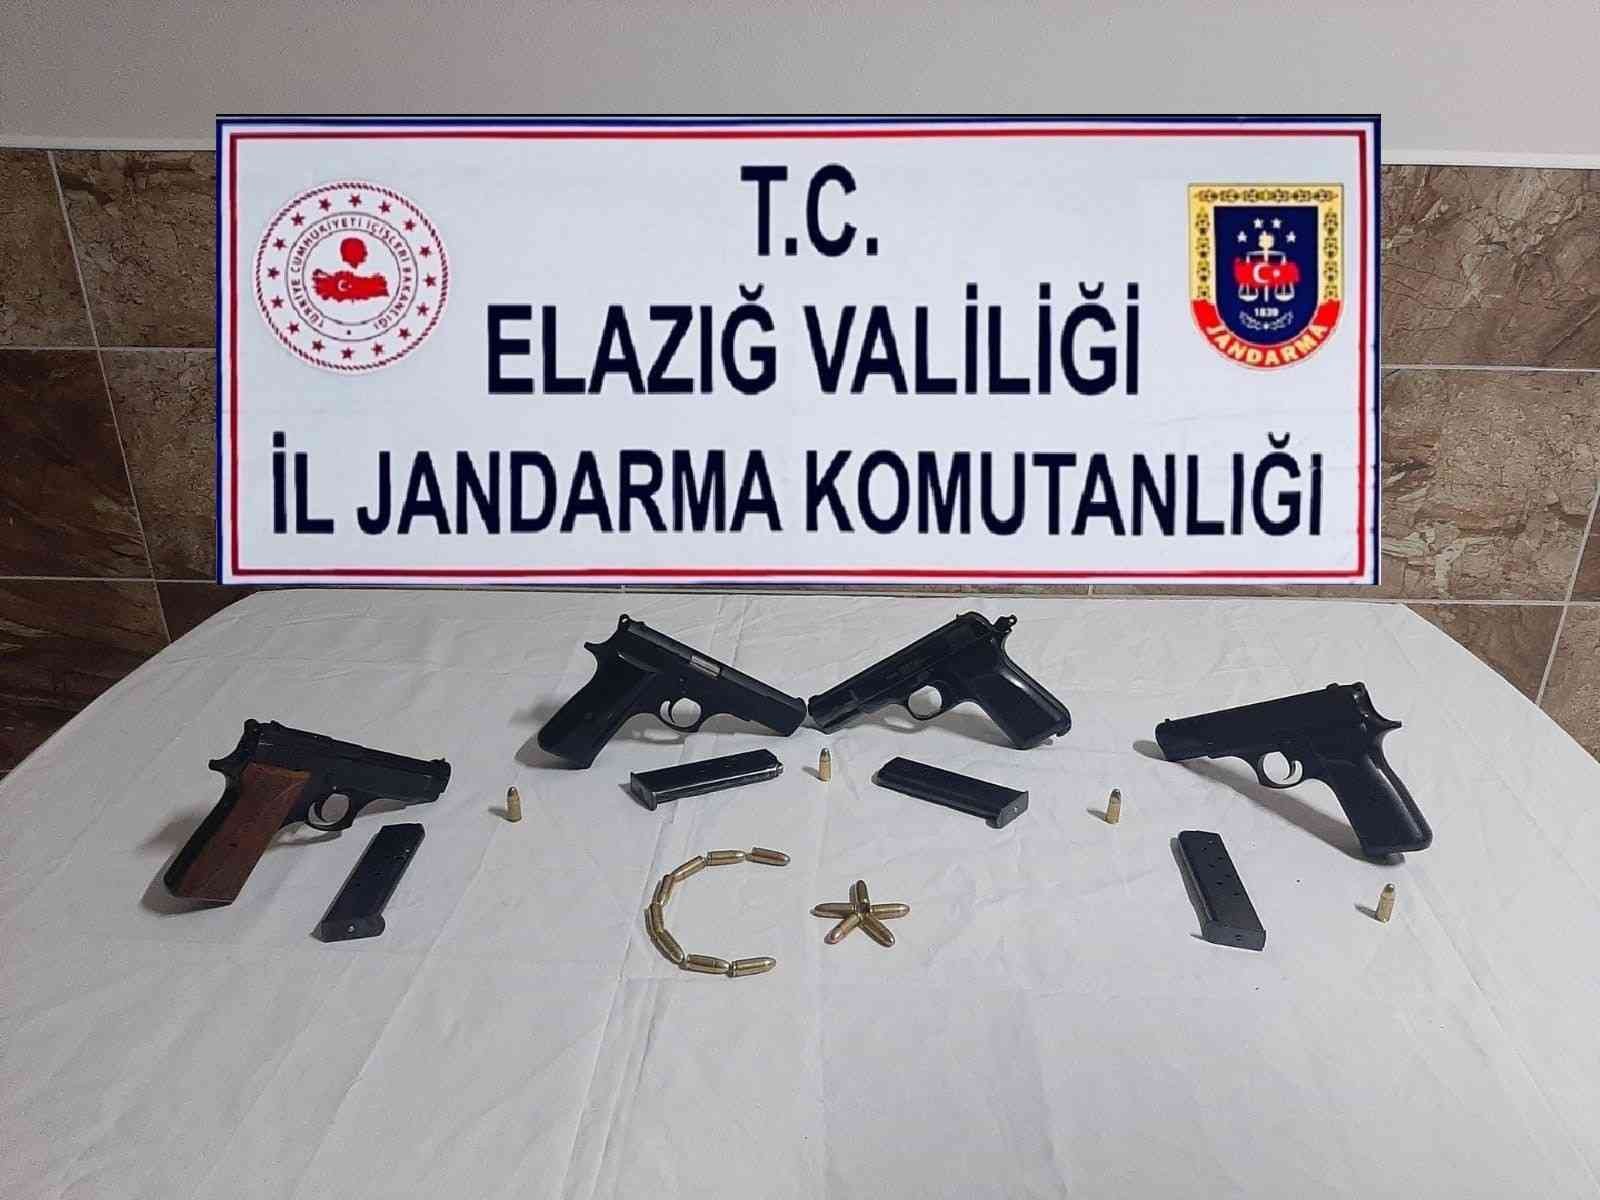 Elazığ’da silah kaçakçılarına operasyon: 2 şüpheli yakalandı #elazig